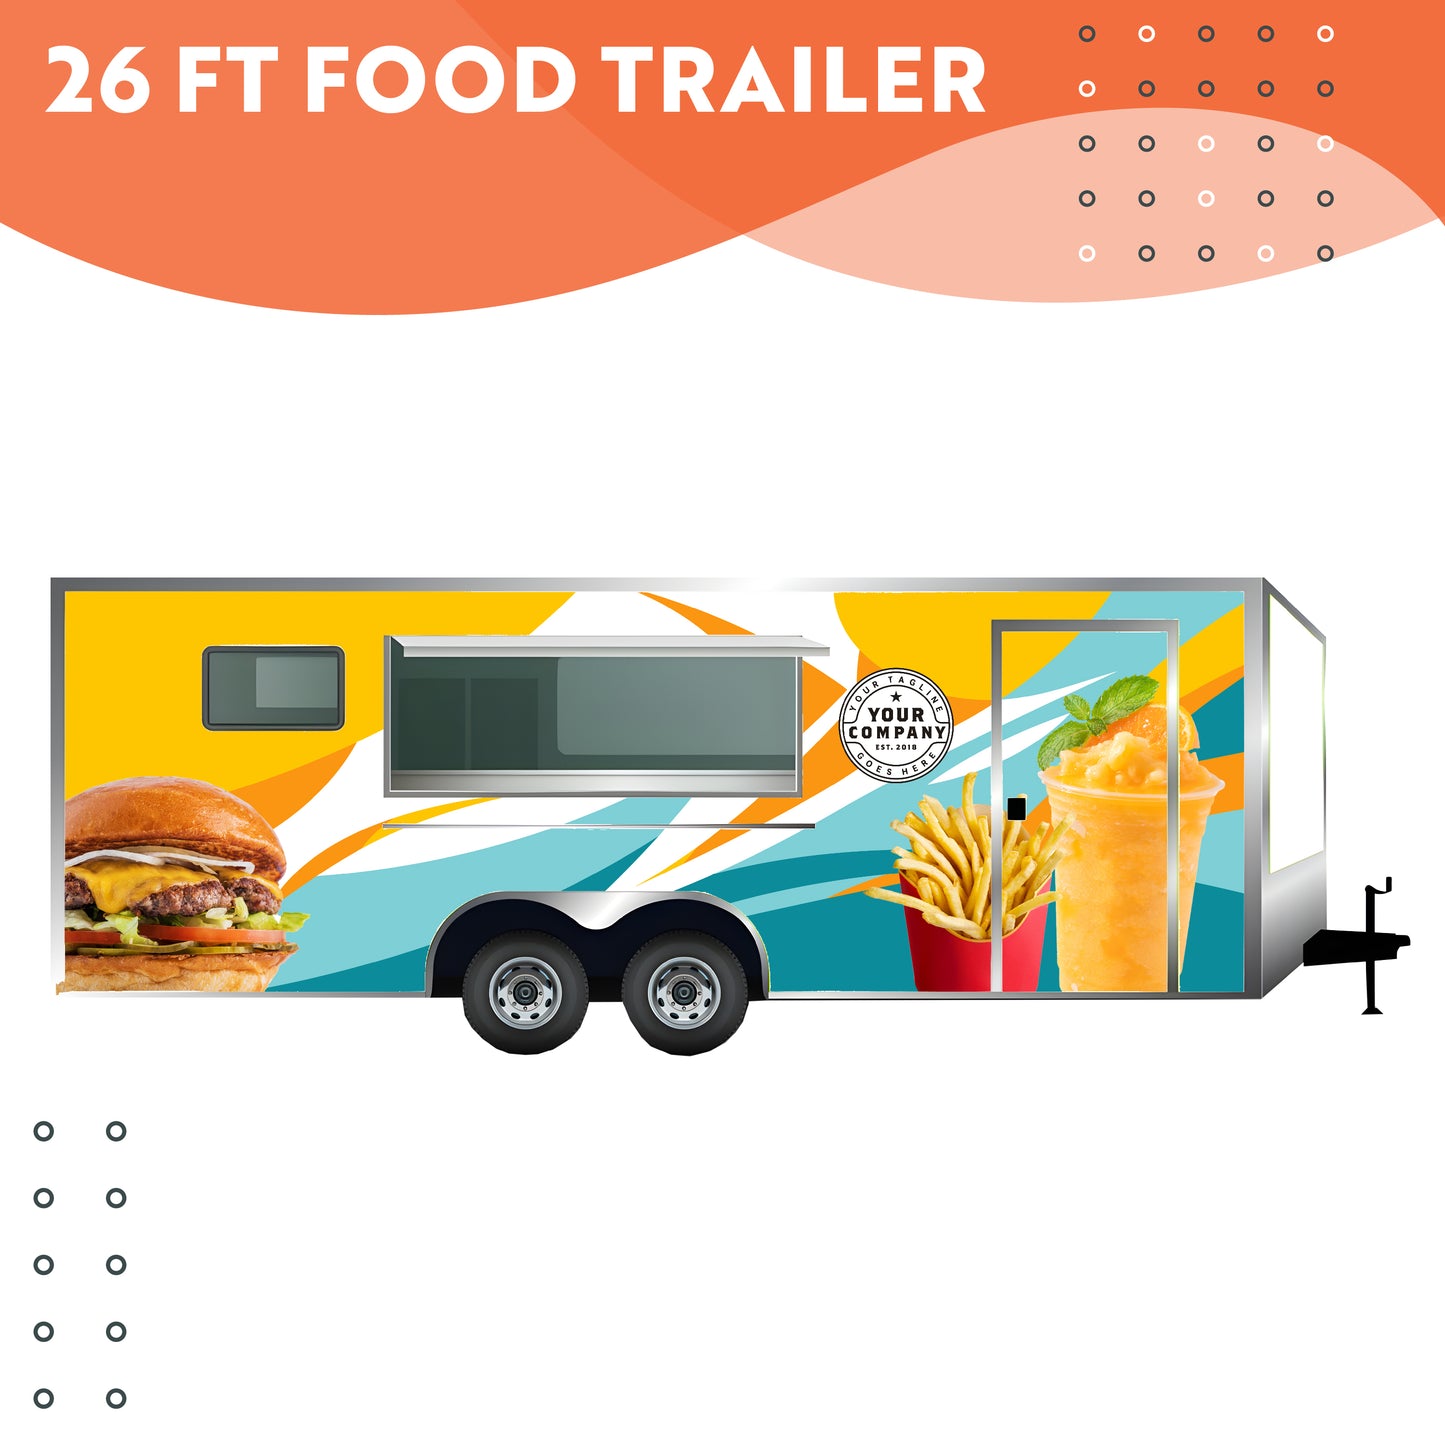 26 ft Food Trailer